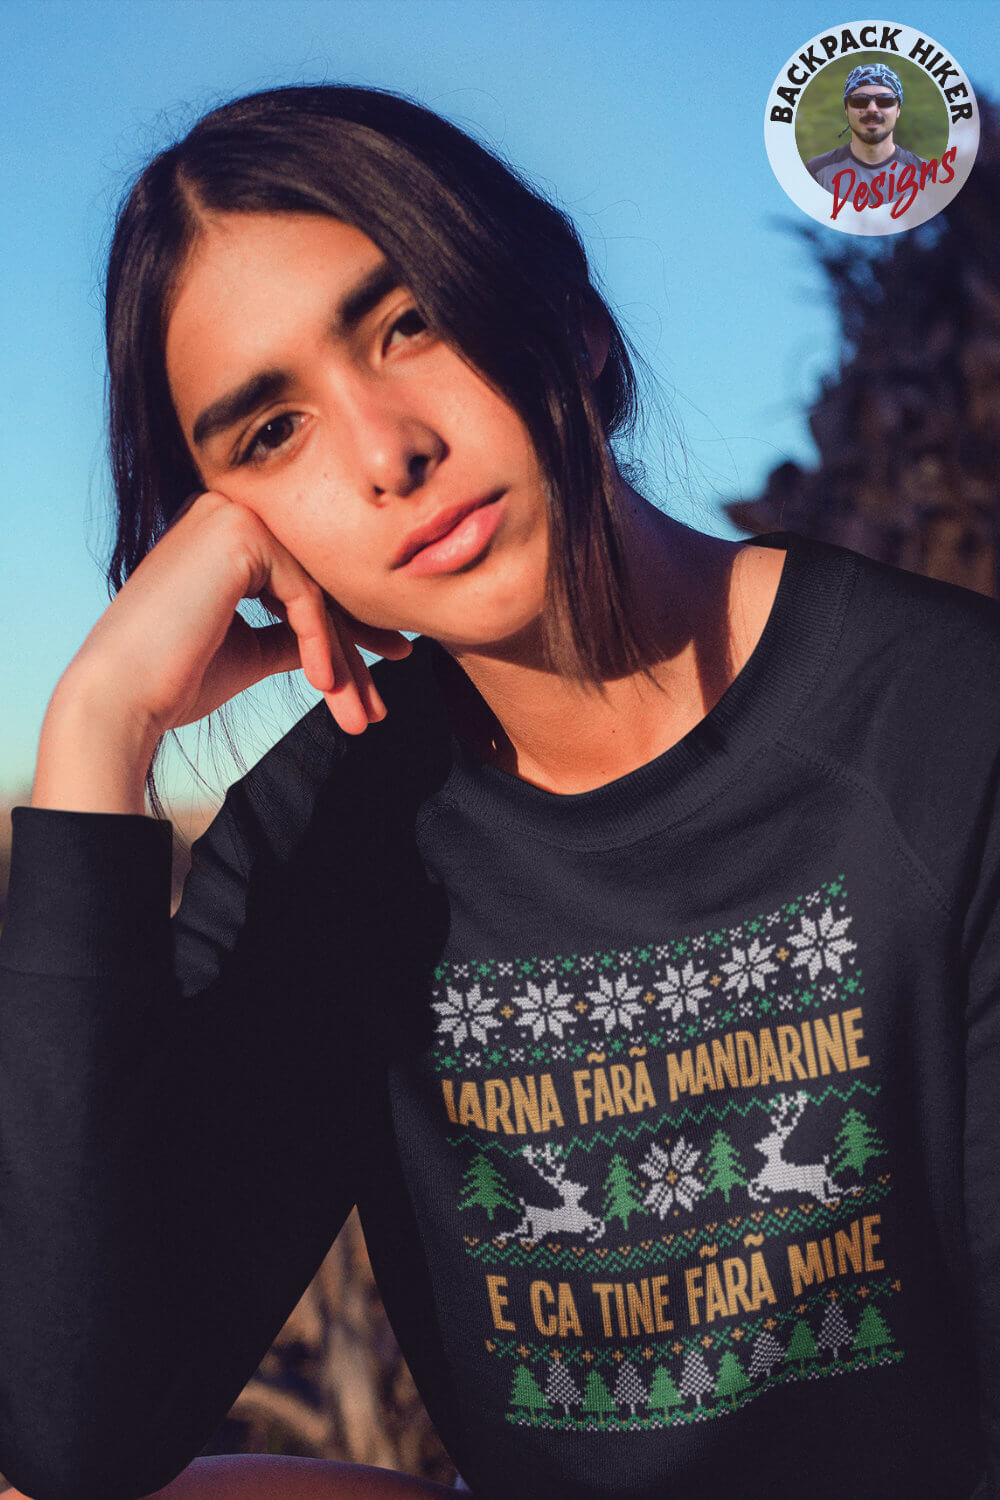 Bluză haioasă cu motive de Crăciun - Iarna fara mandarine